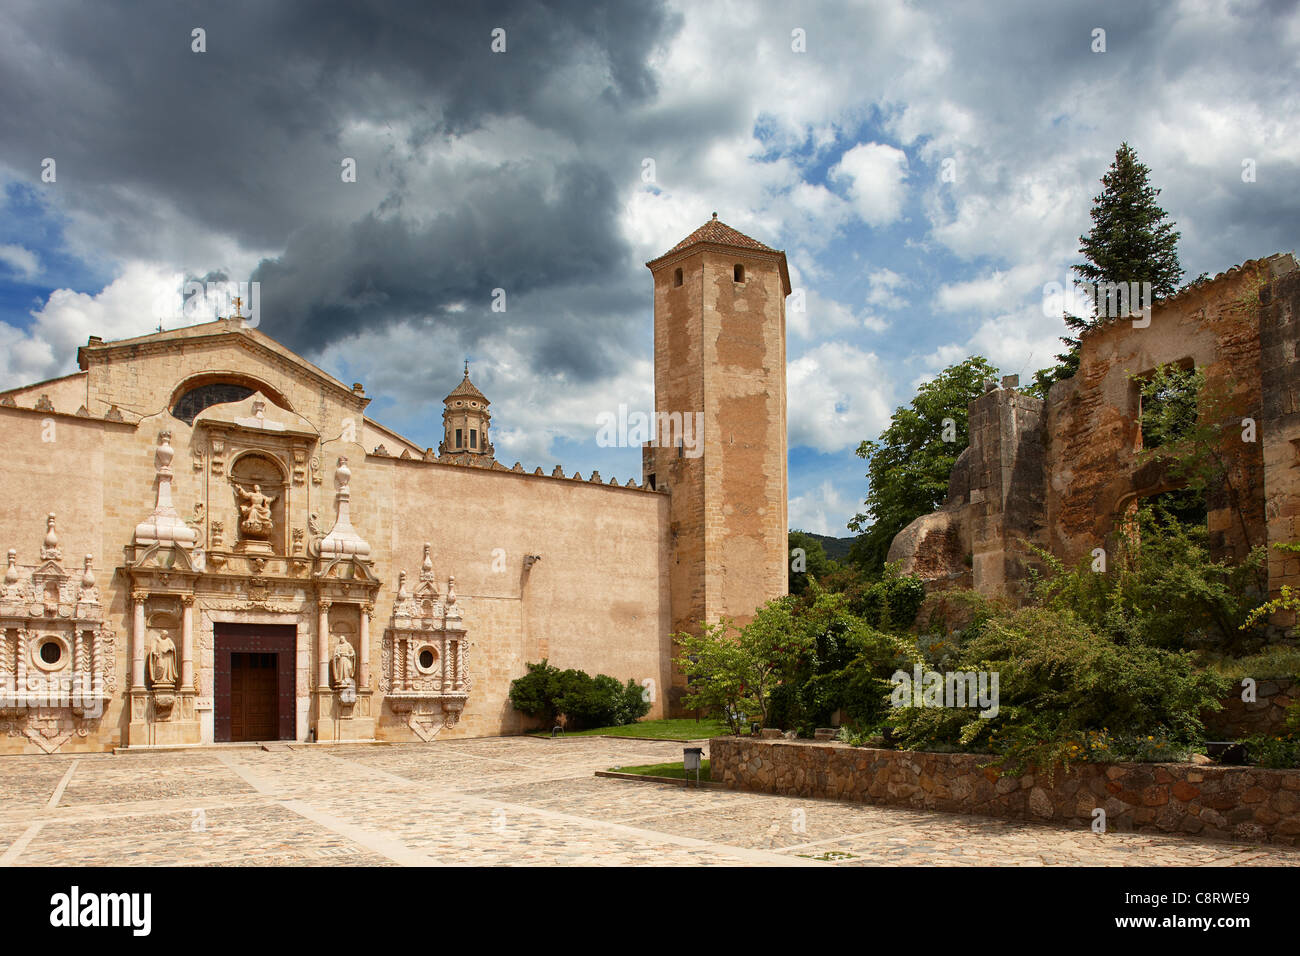 The Royal Abbey of Santa Maria de Poblet. Vimbodi i Poblet, Catalonia, Spain. Stock Photo